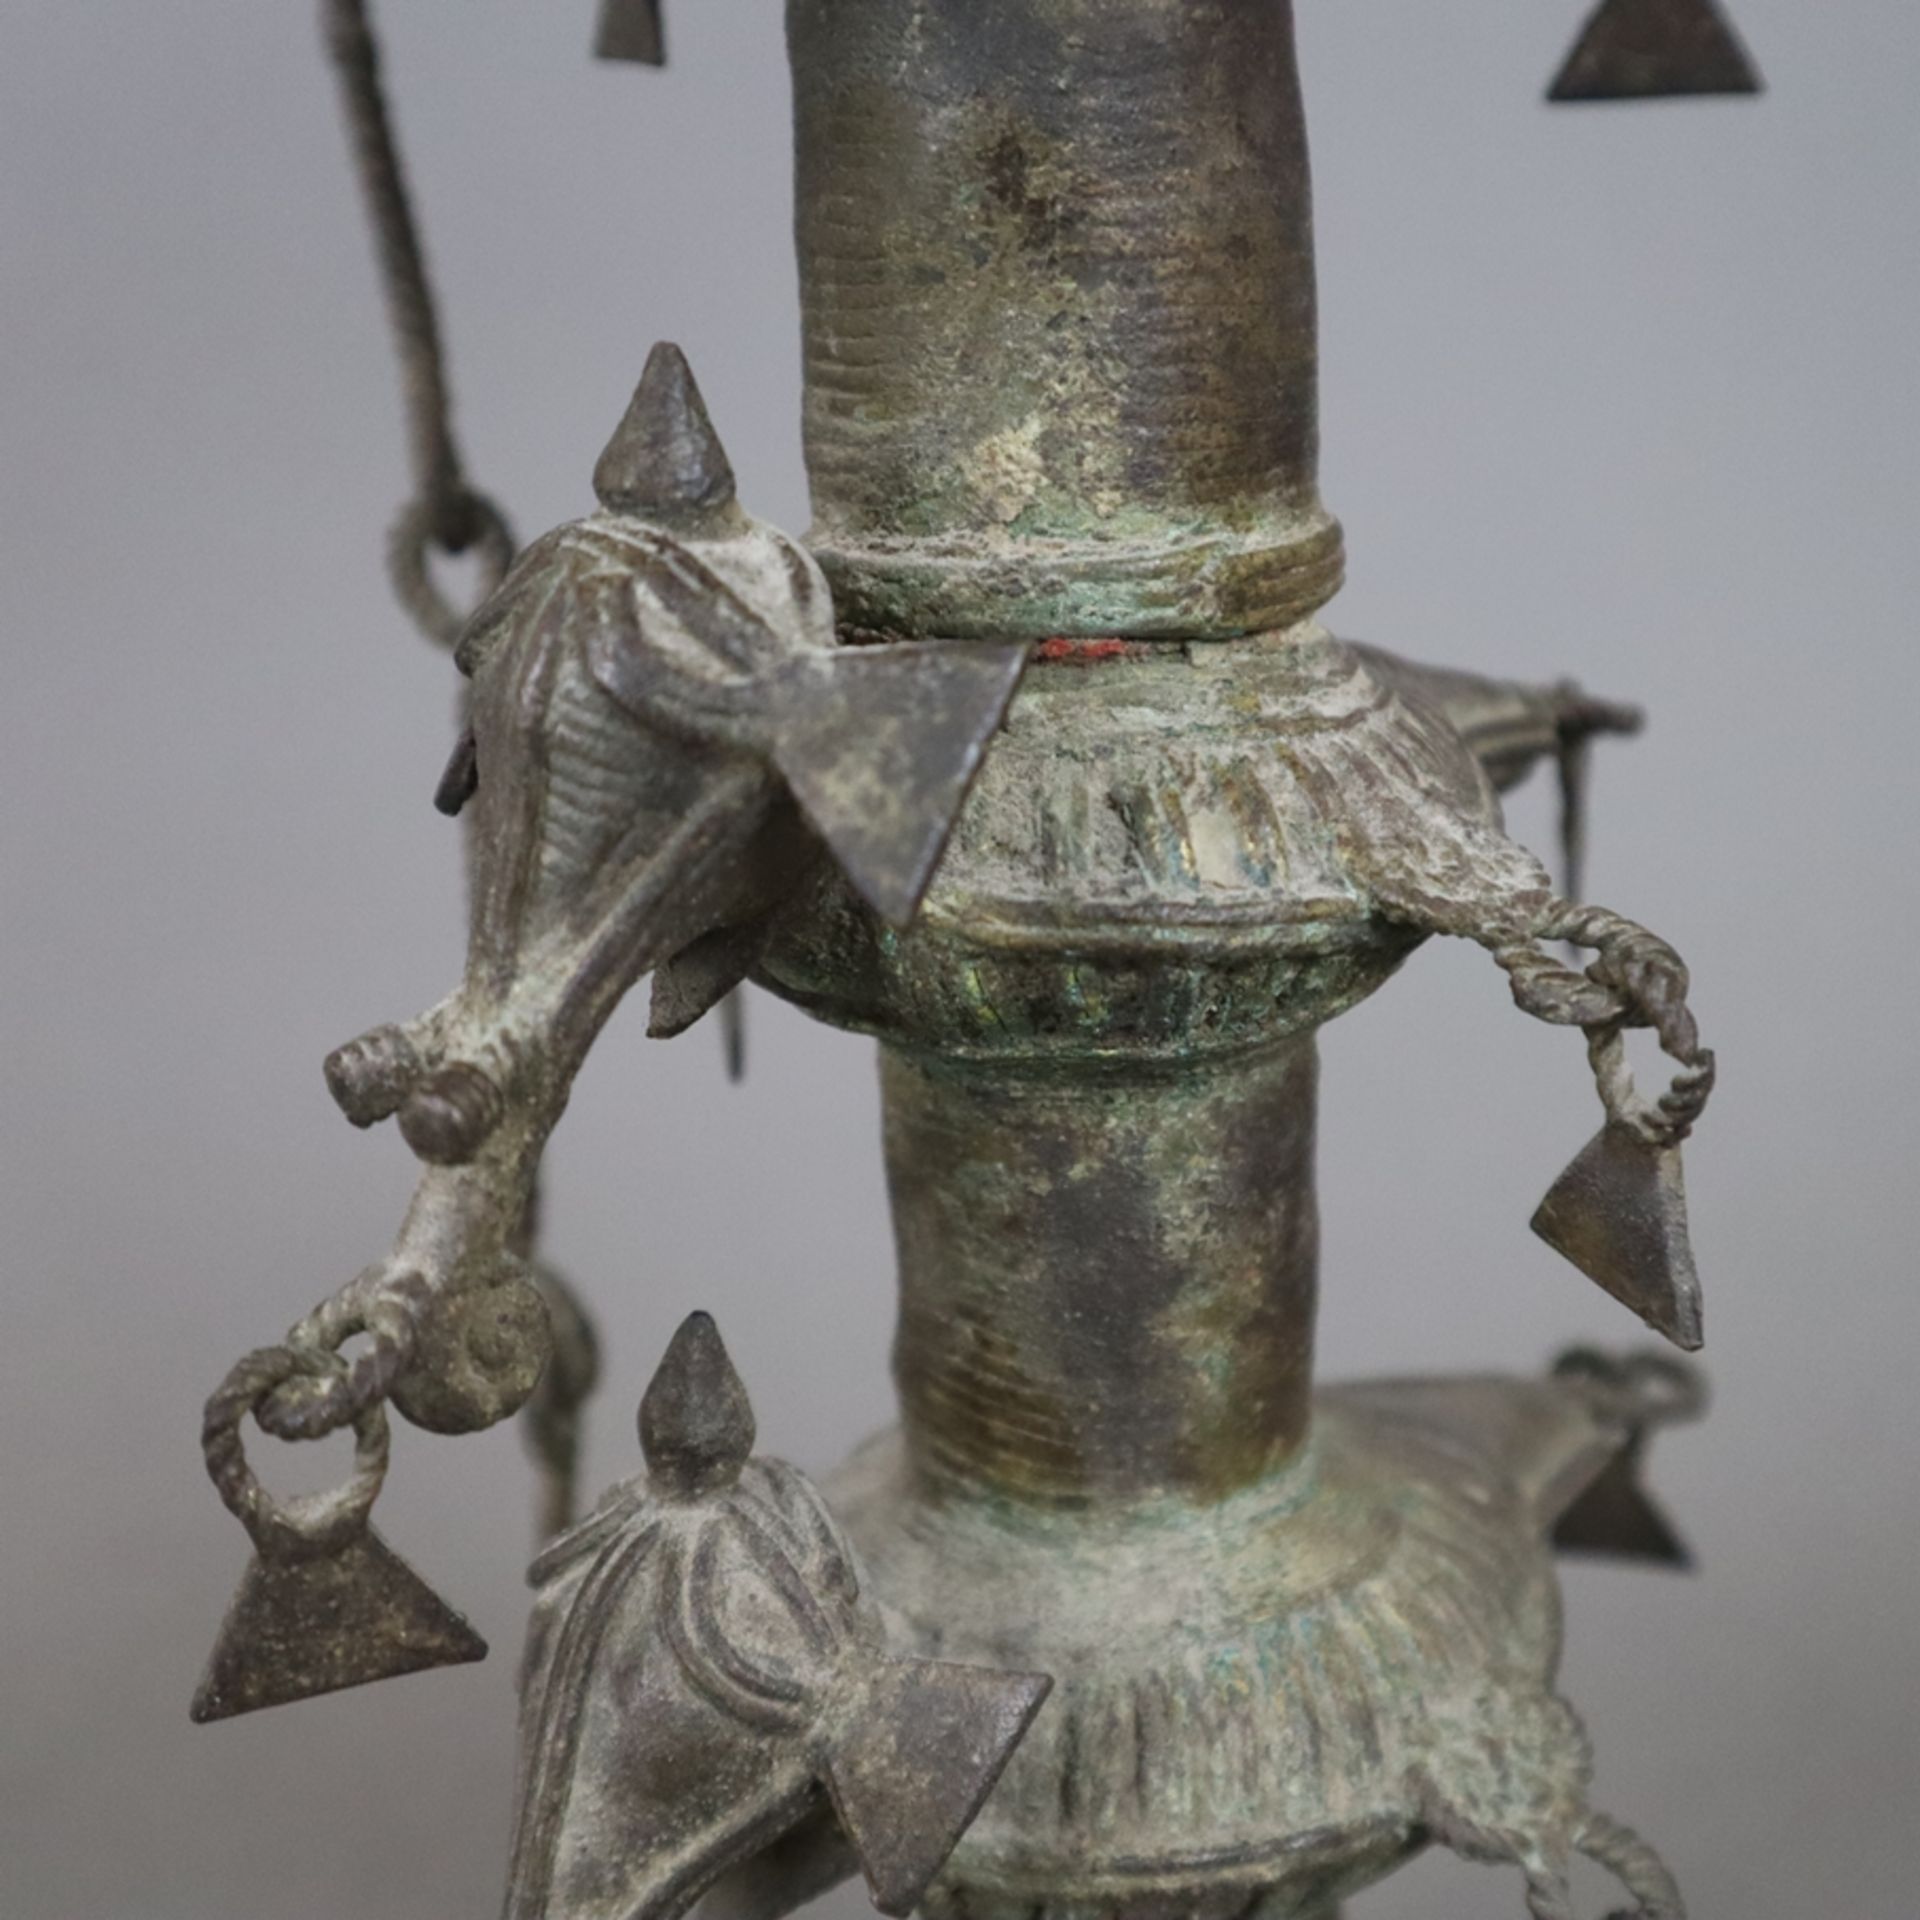 Hohe Öllampe - Indien, Bastar-Region, Bronze mit Alterspatina, über gewölbtem Fuß gegliederter Scha - Image 6 of 9